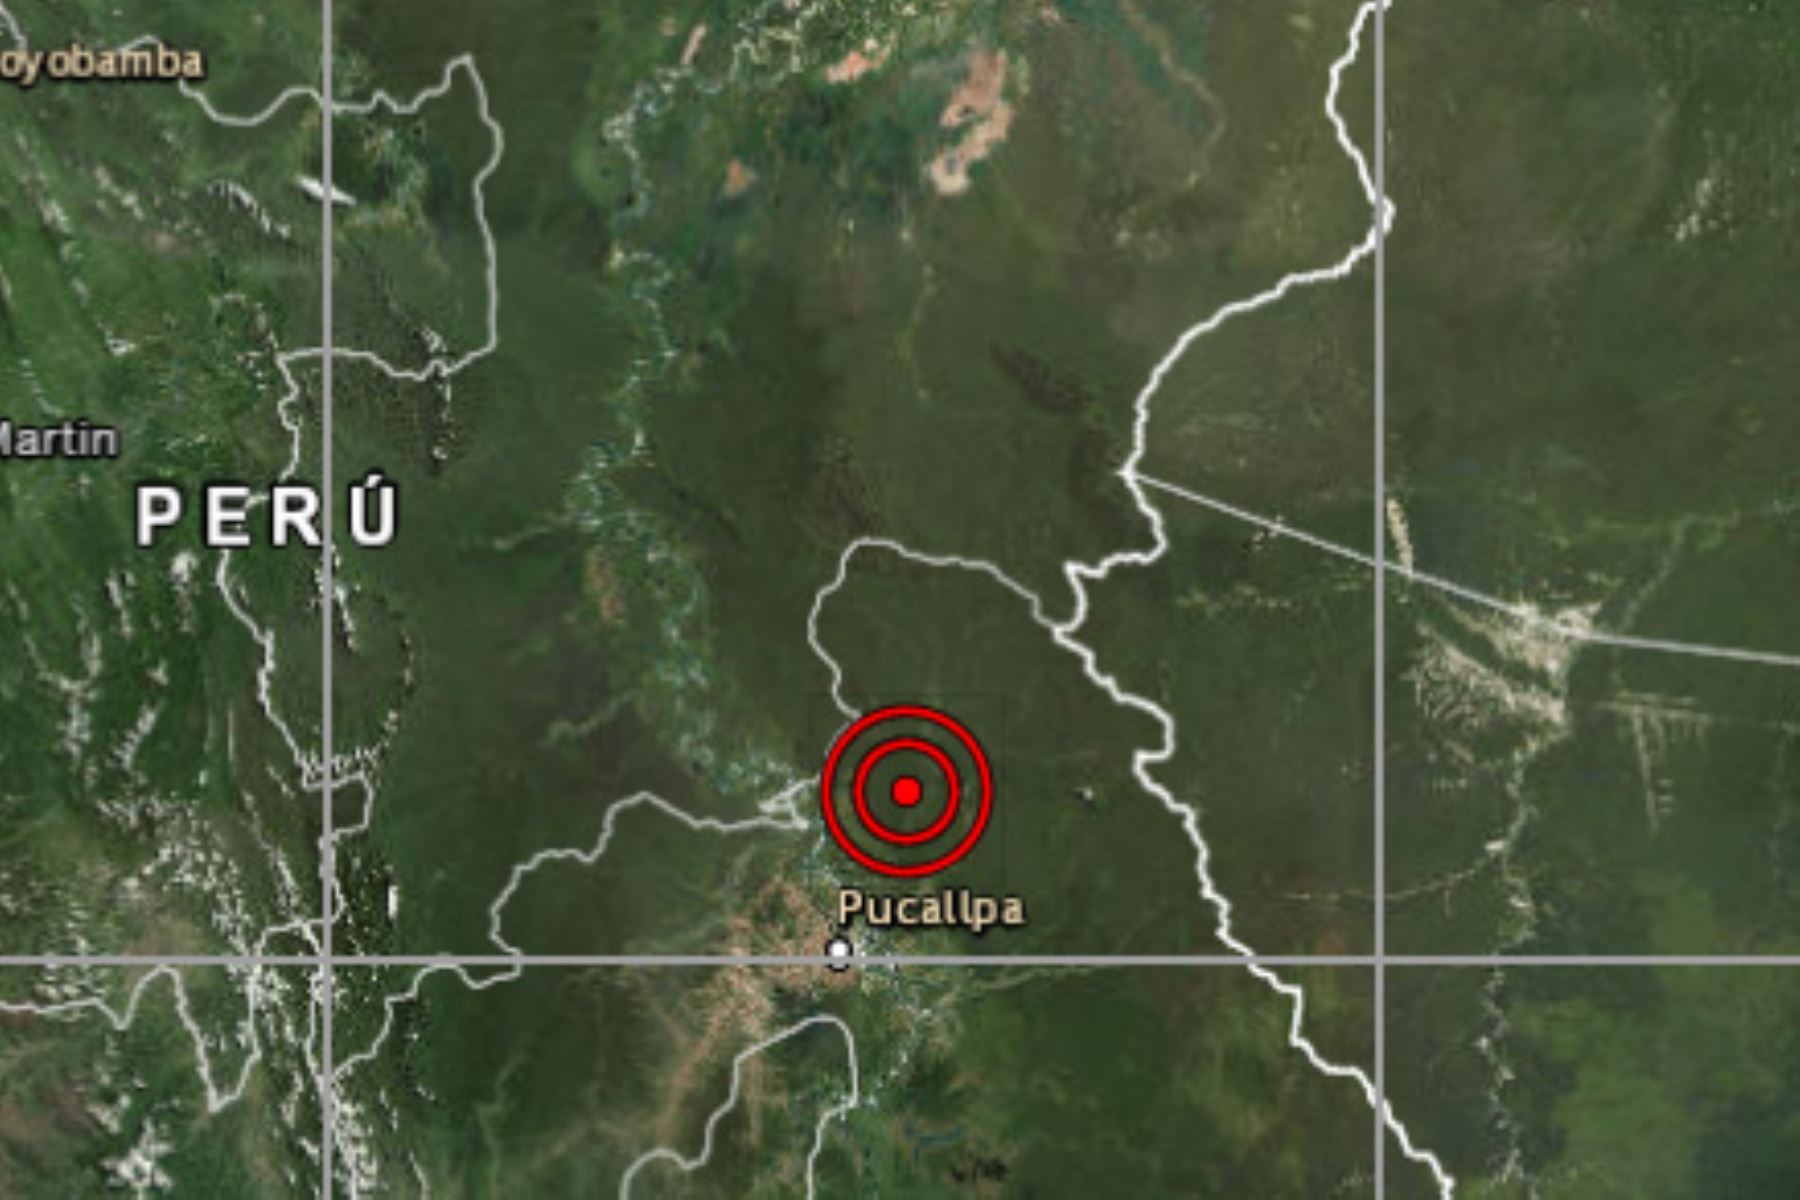 Sismo de magnitud 4 se registró esta madrugada en Pucallpa, región Ucayali, informó el IGP.